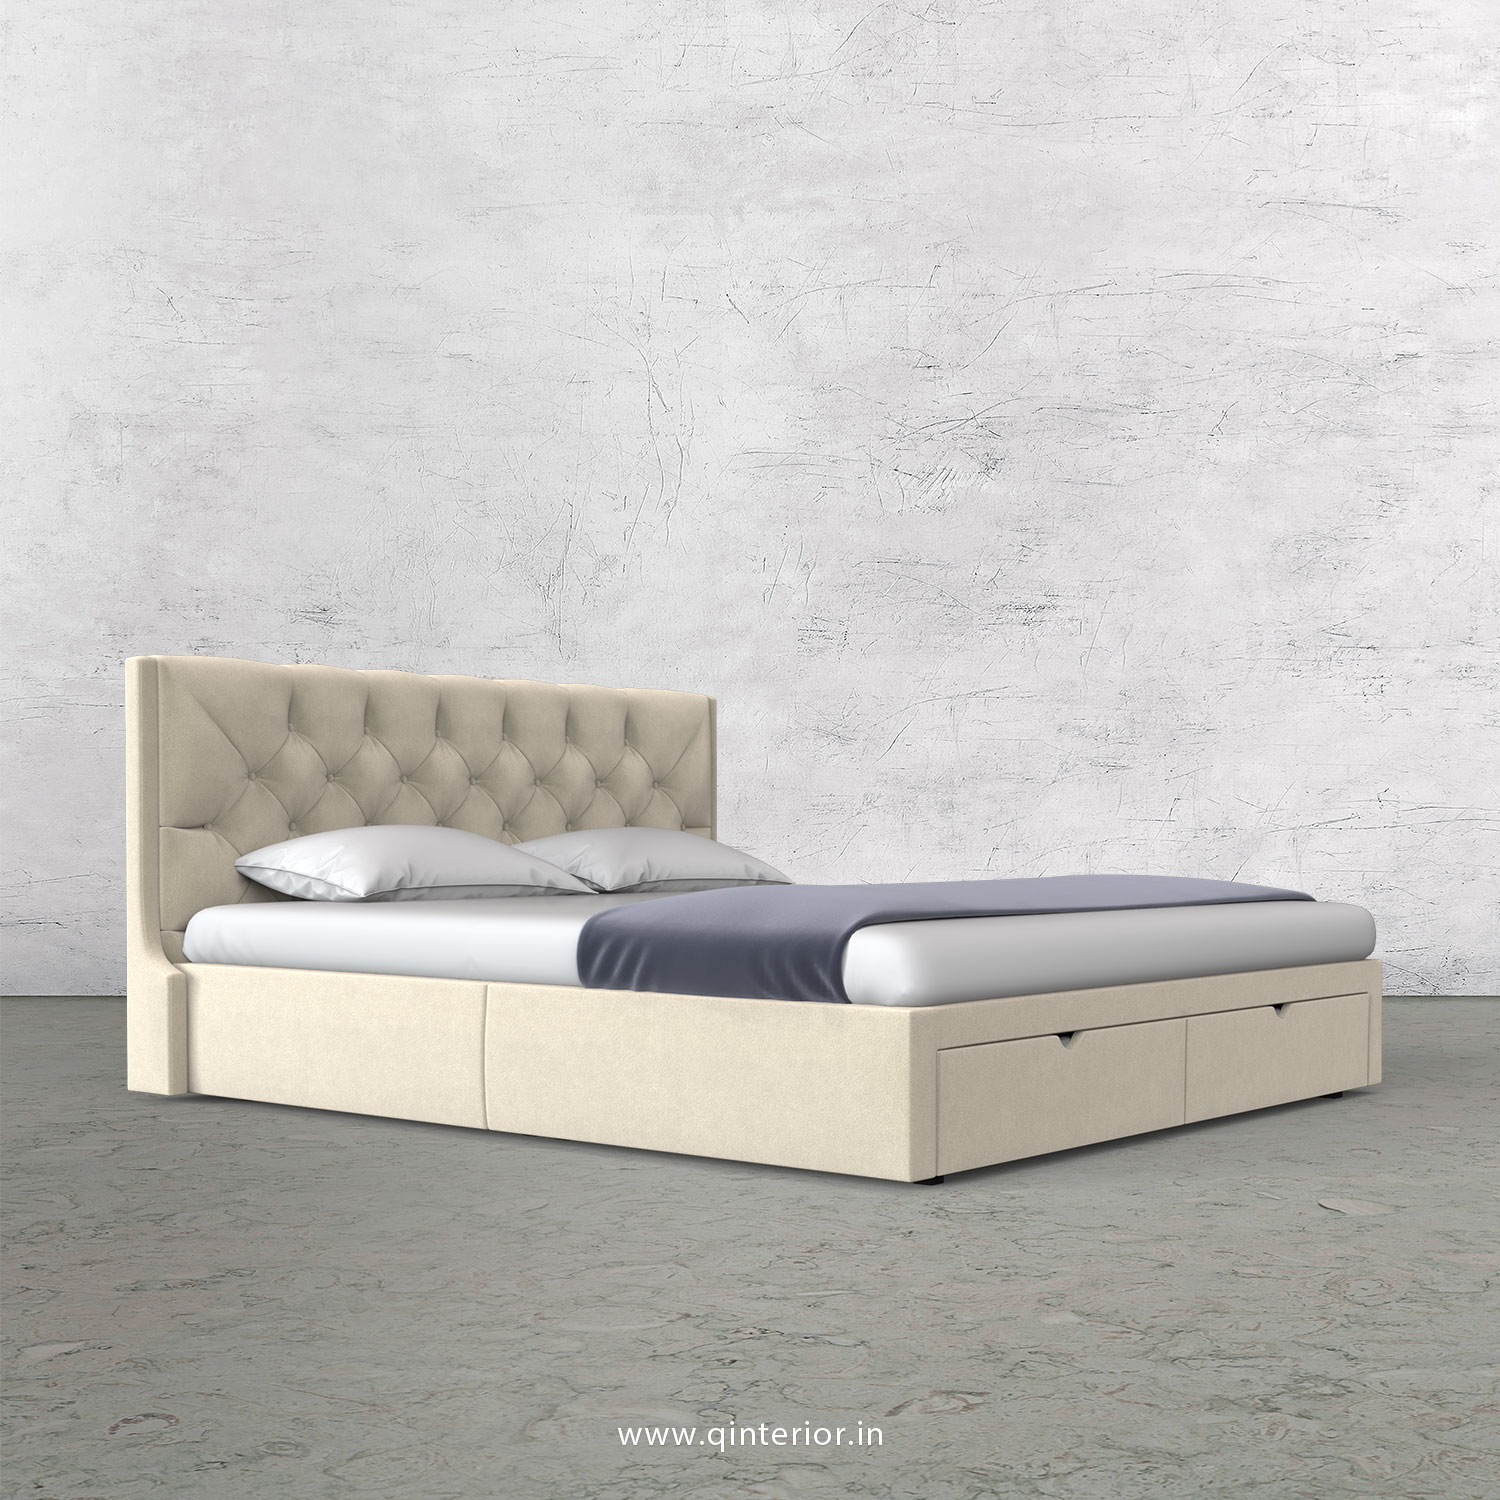 Scorpius Queen Storage Bed in Velvet Fabric - QBD001 VL01